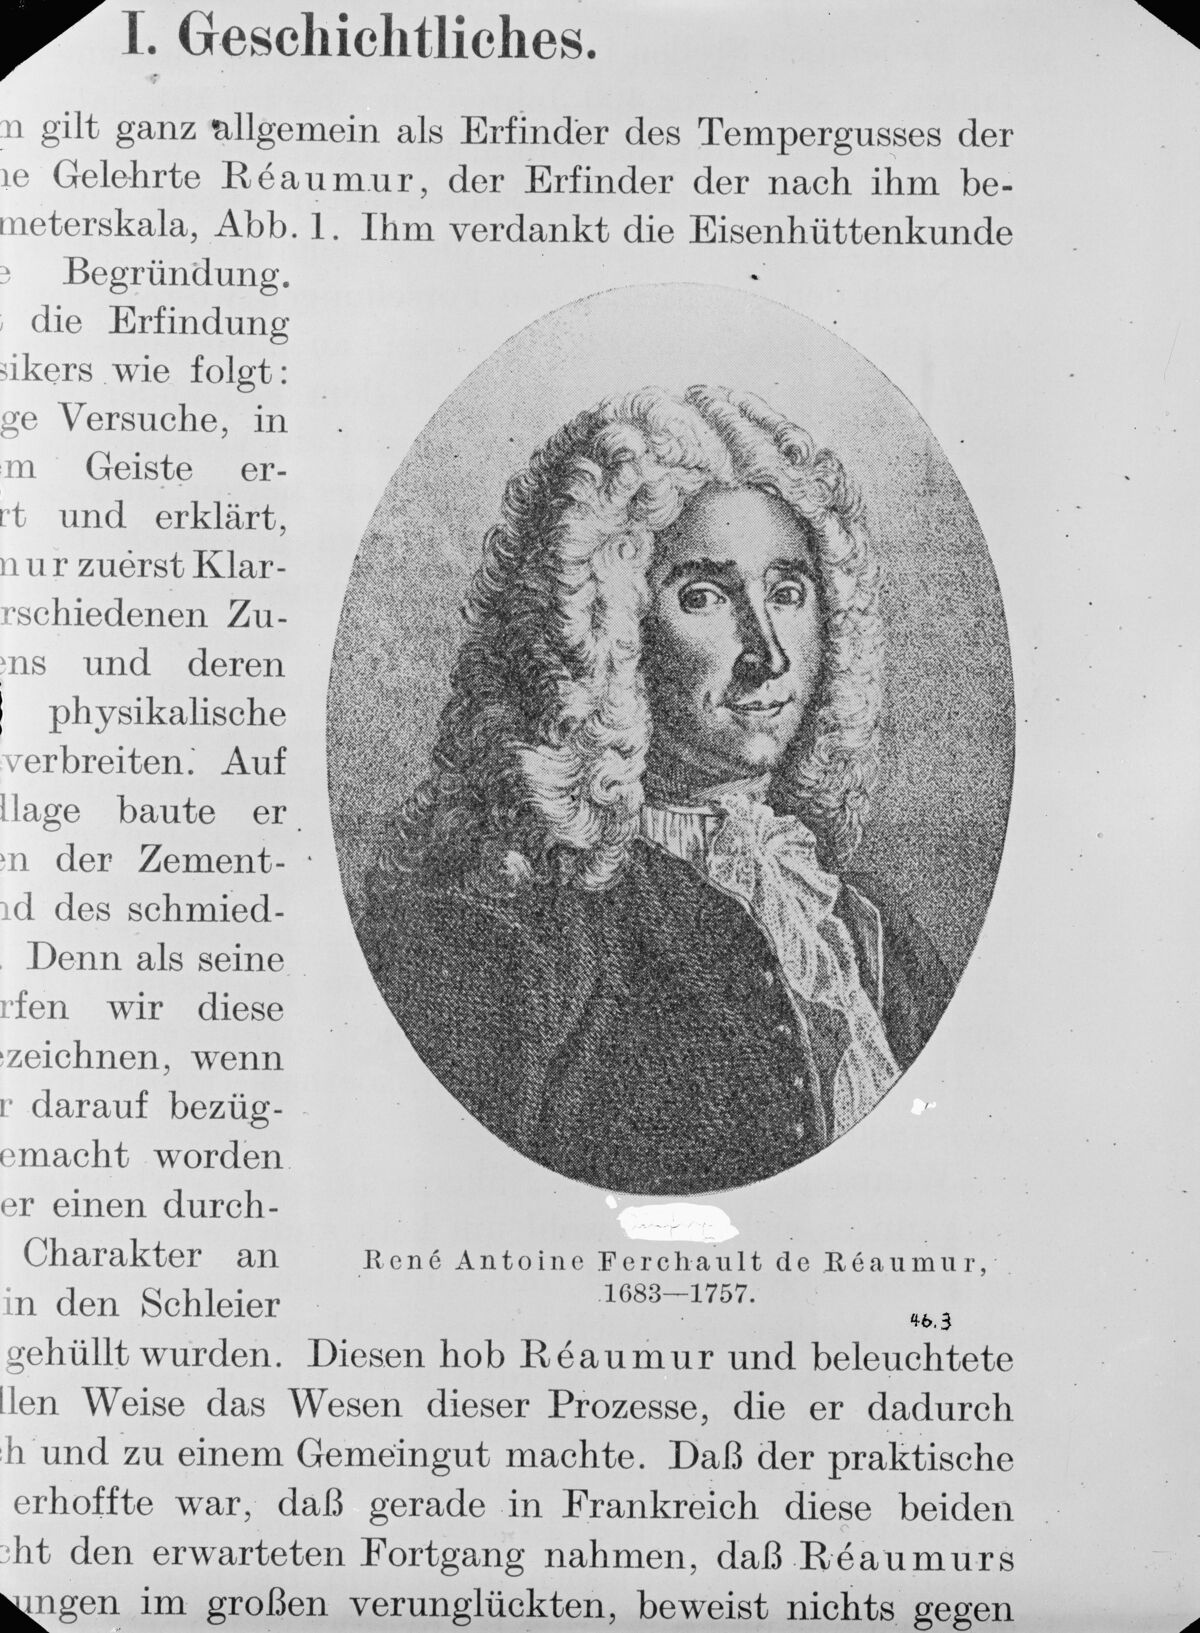 GFA 16/463: Porträt von René Antoine Ferchault de Reaumur 1683-1757